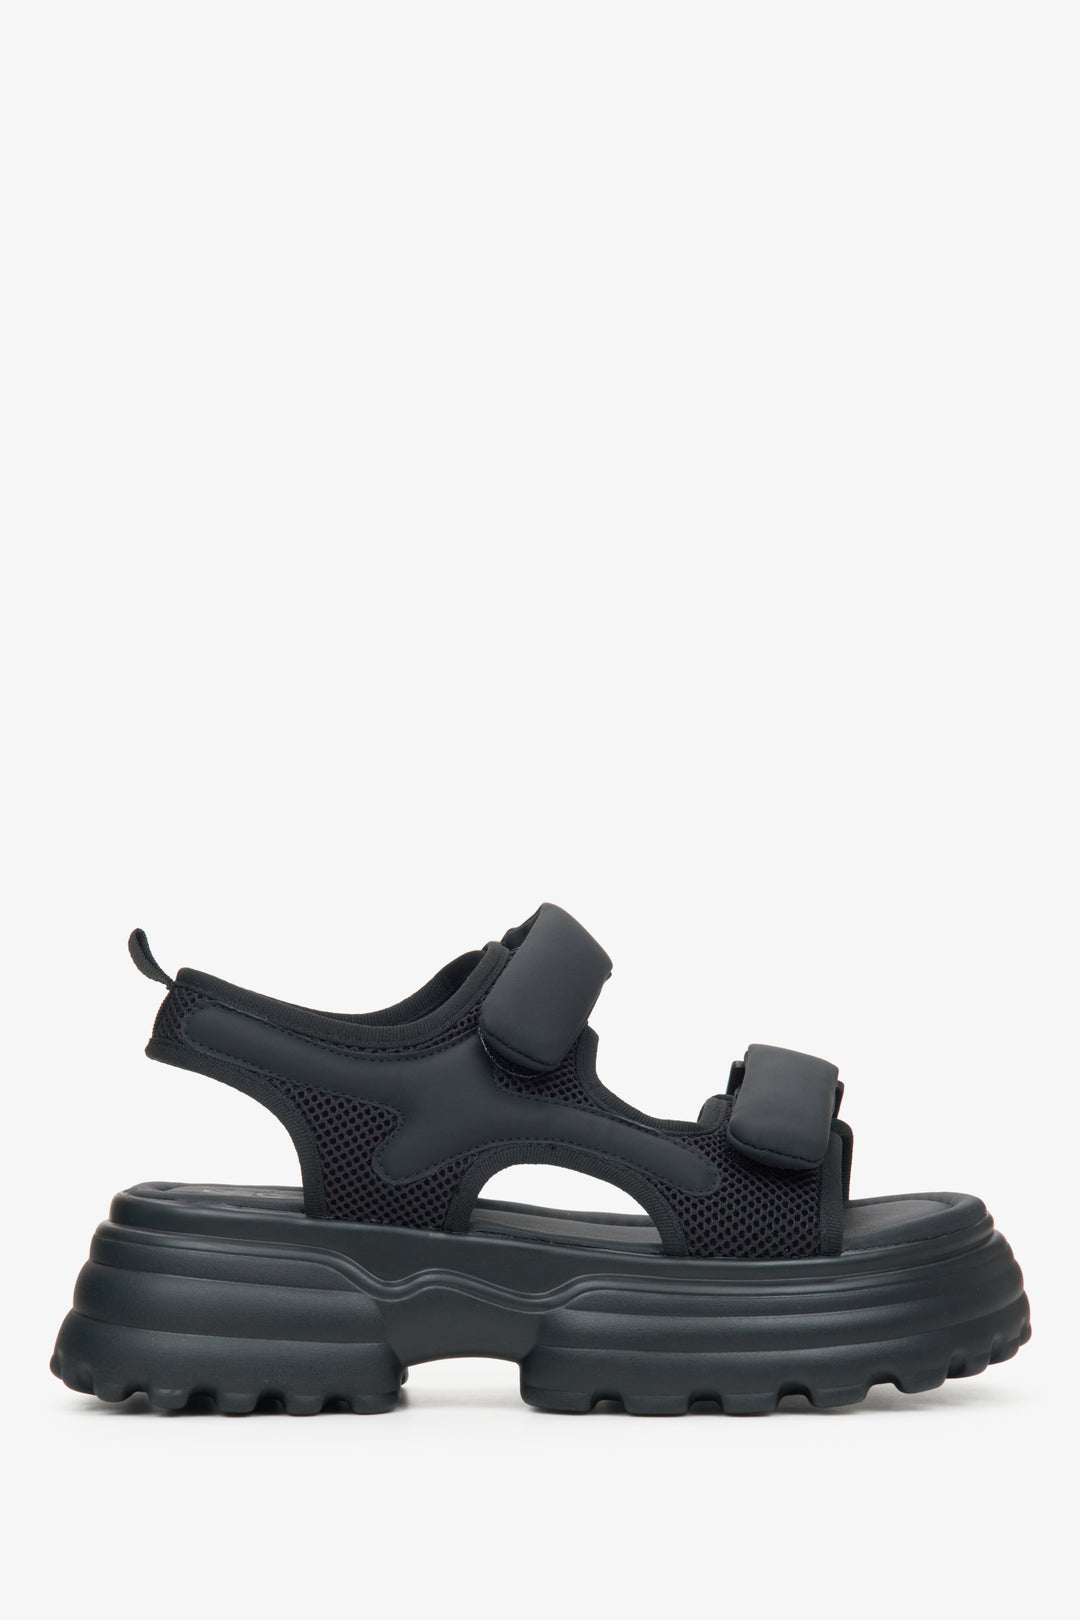 Czarne sportowe sandały damskie na rzep z grubą podeszwą ES8 ER00115498